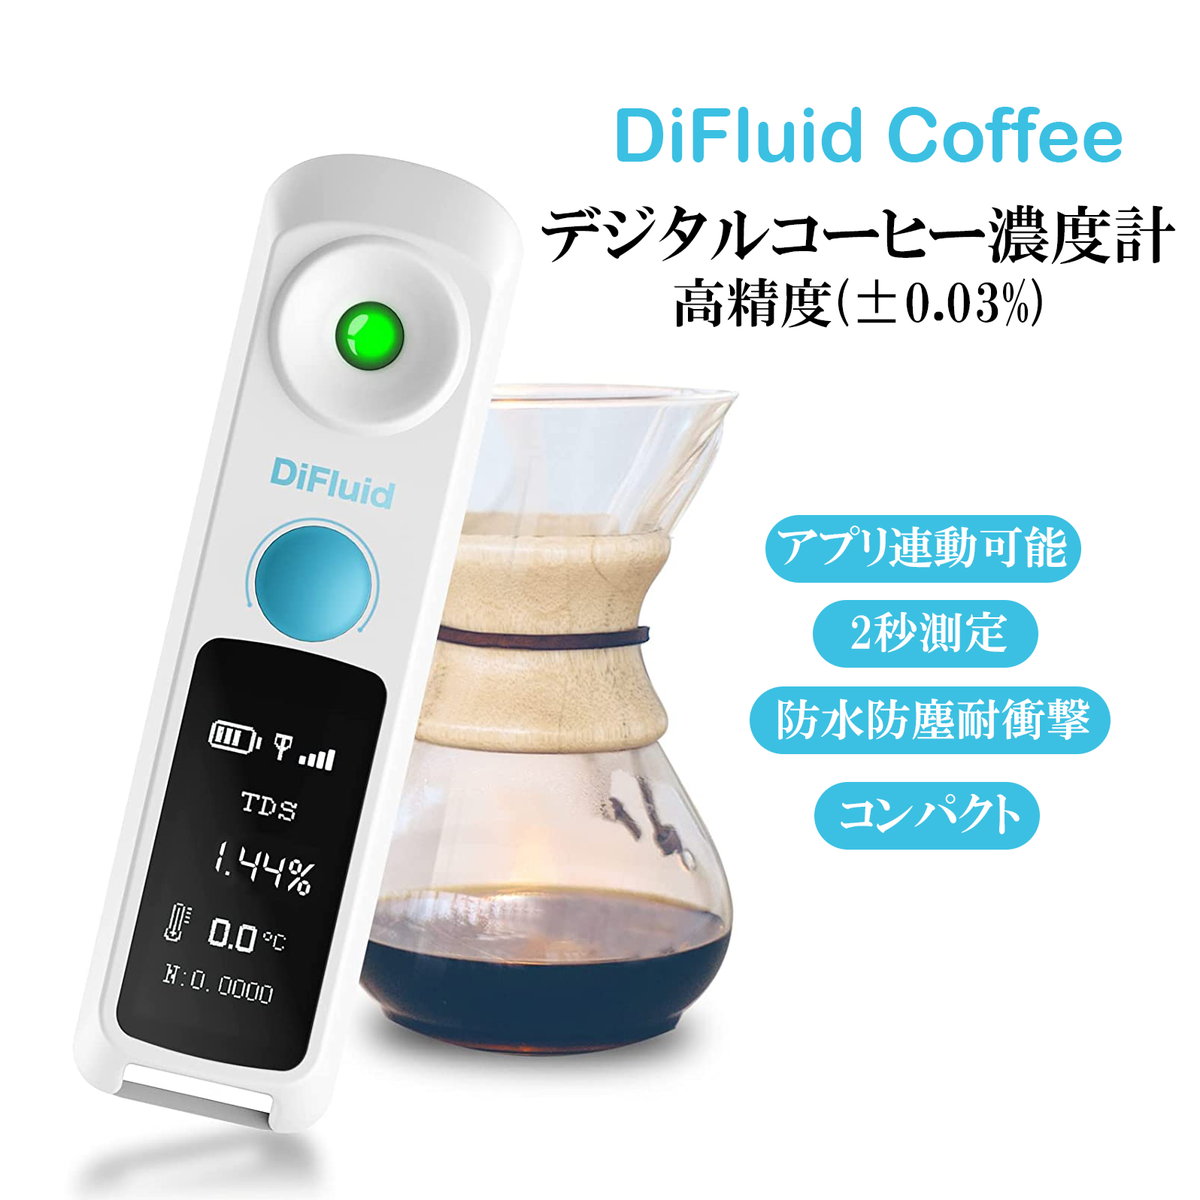 【楽天市場】DiFluid Coffee 小型 デジタル コーヒー濃度計 測定精度